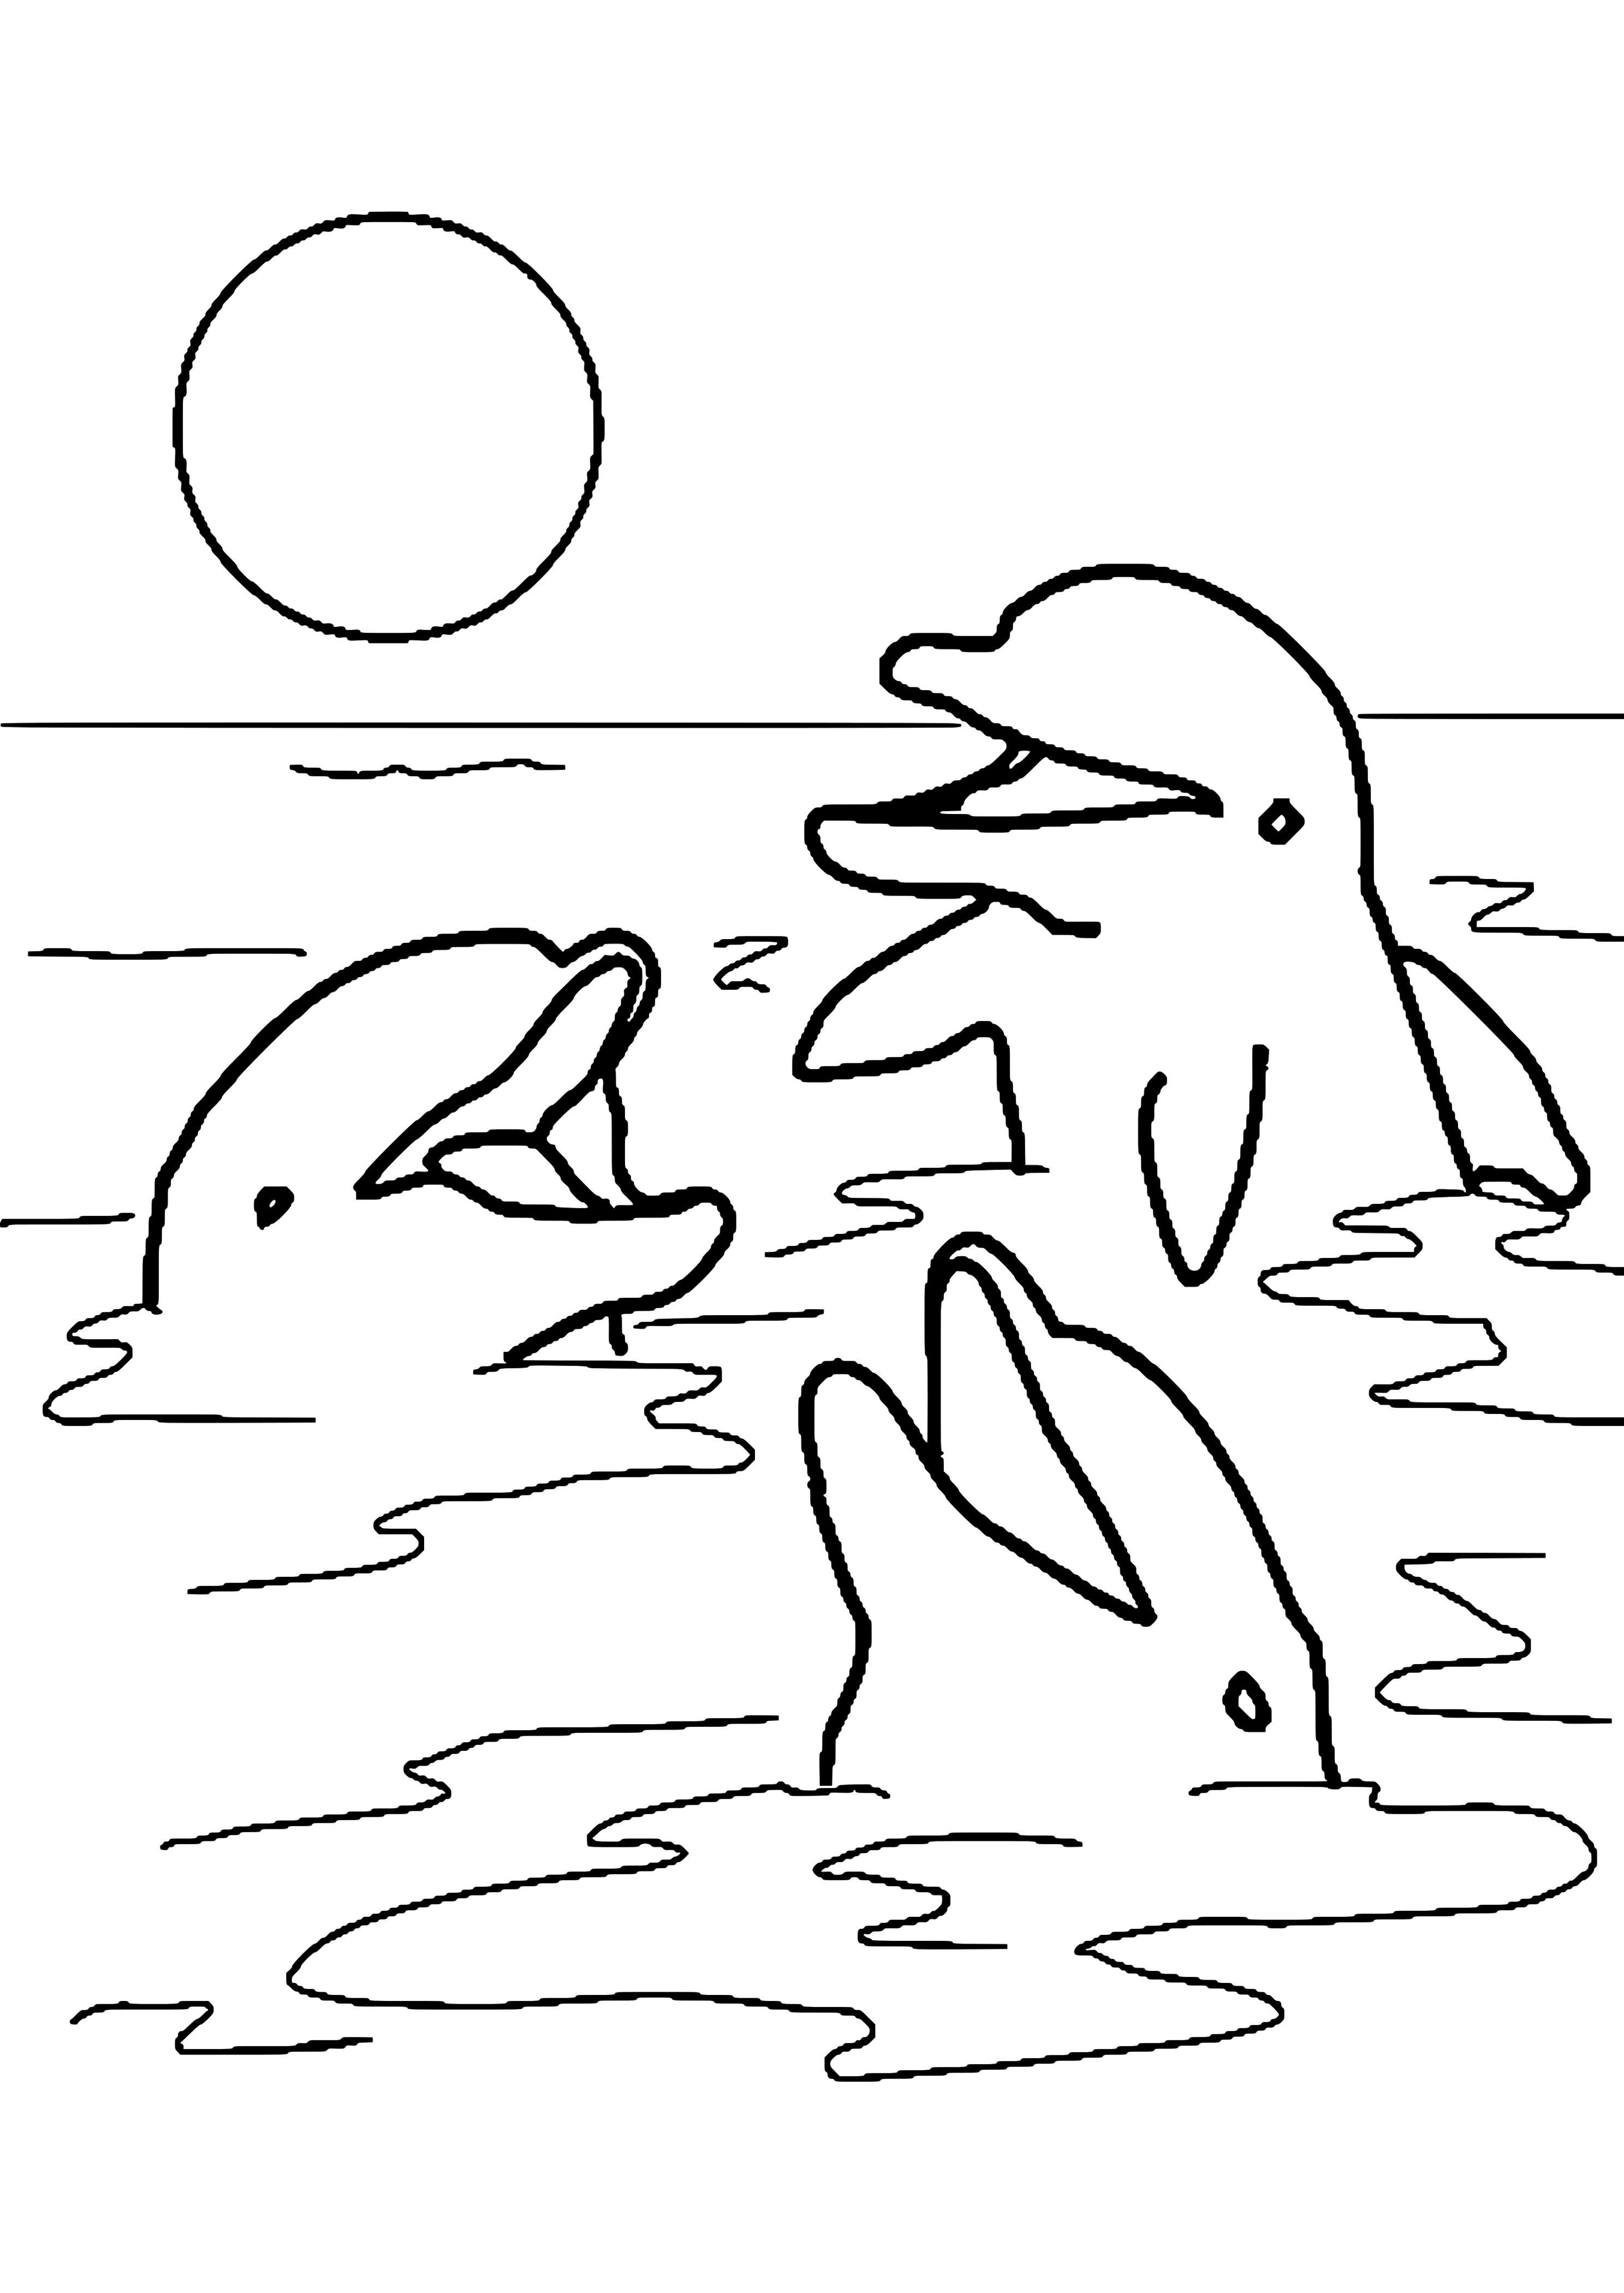 Ausmalbilder Delfine Zum Ausdrucken
 Malvorlagen Delfine Meerjungfrau Zum Drucken verwandt mit